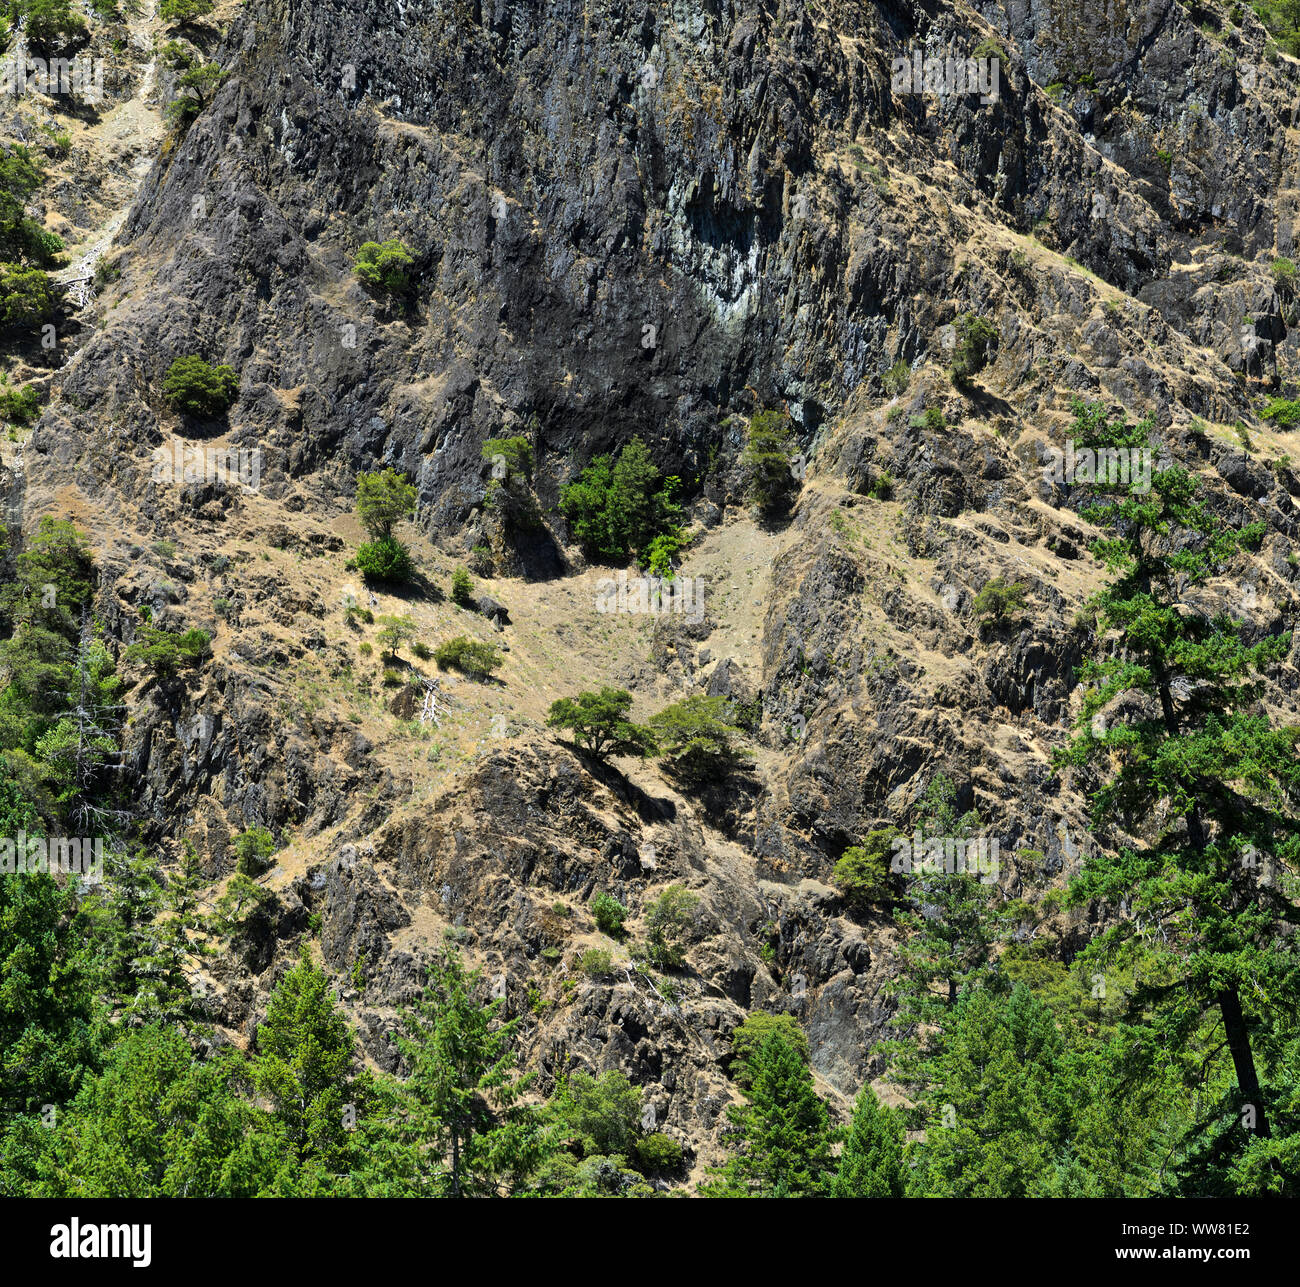 La ligne de falaises Rogue River Canyon, à la Rogue River Ranch, un site historique restauré dans la forêt nationale de Rogue River-Siskiyou, près de Galice Oregon Banque D'Images